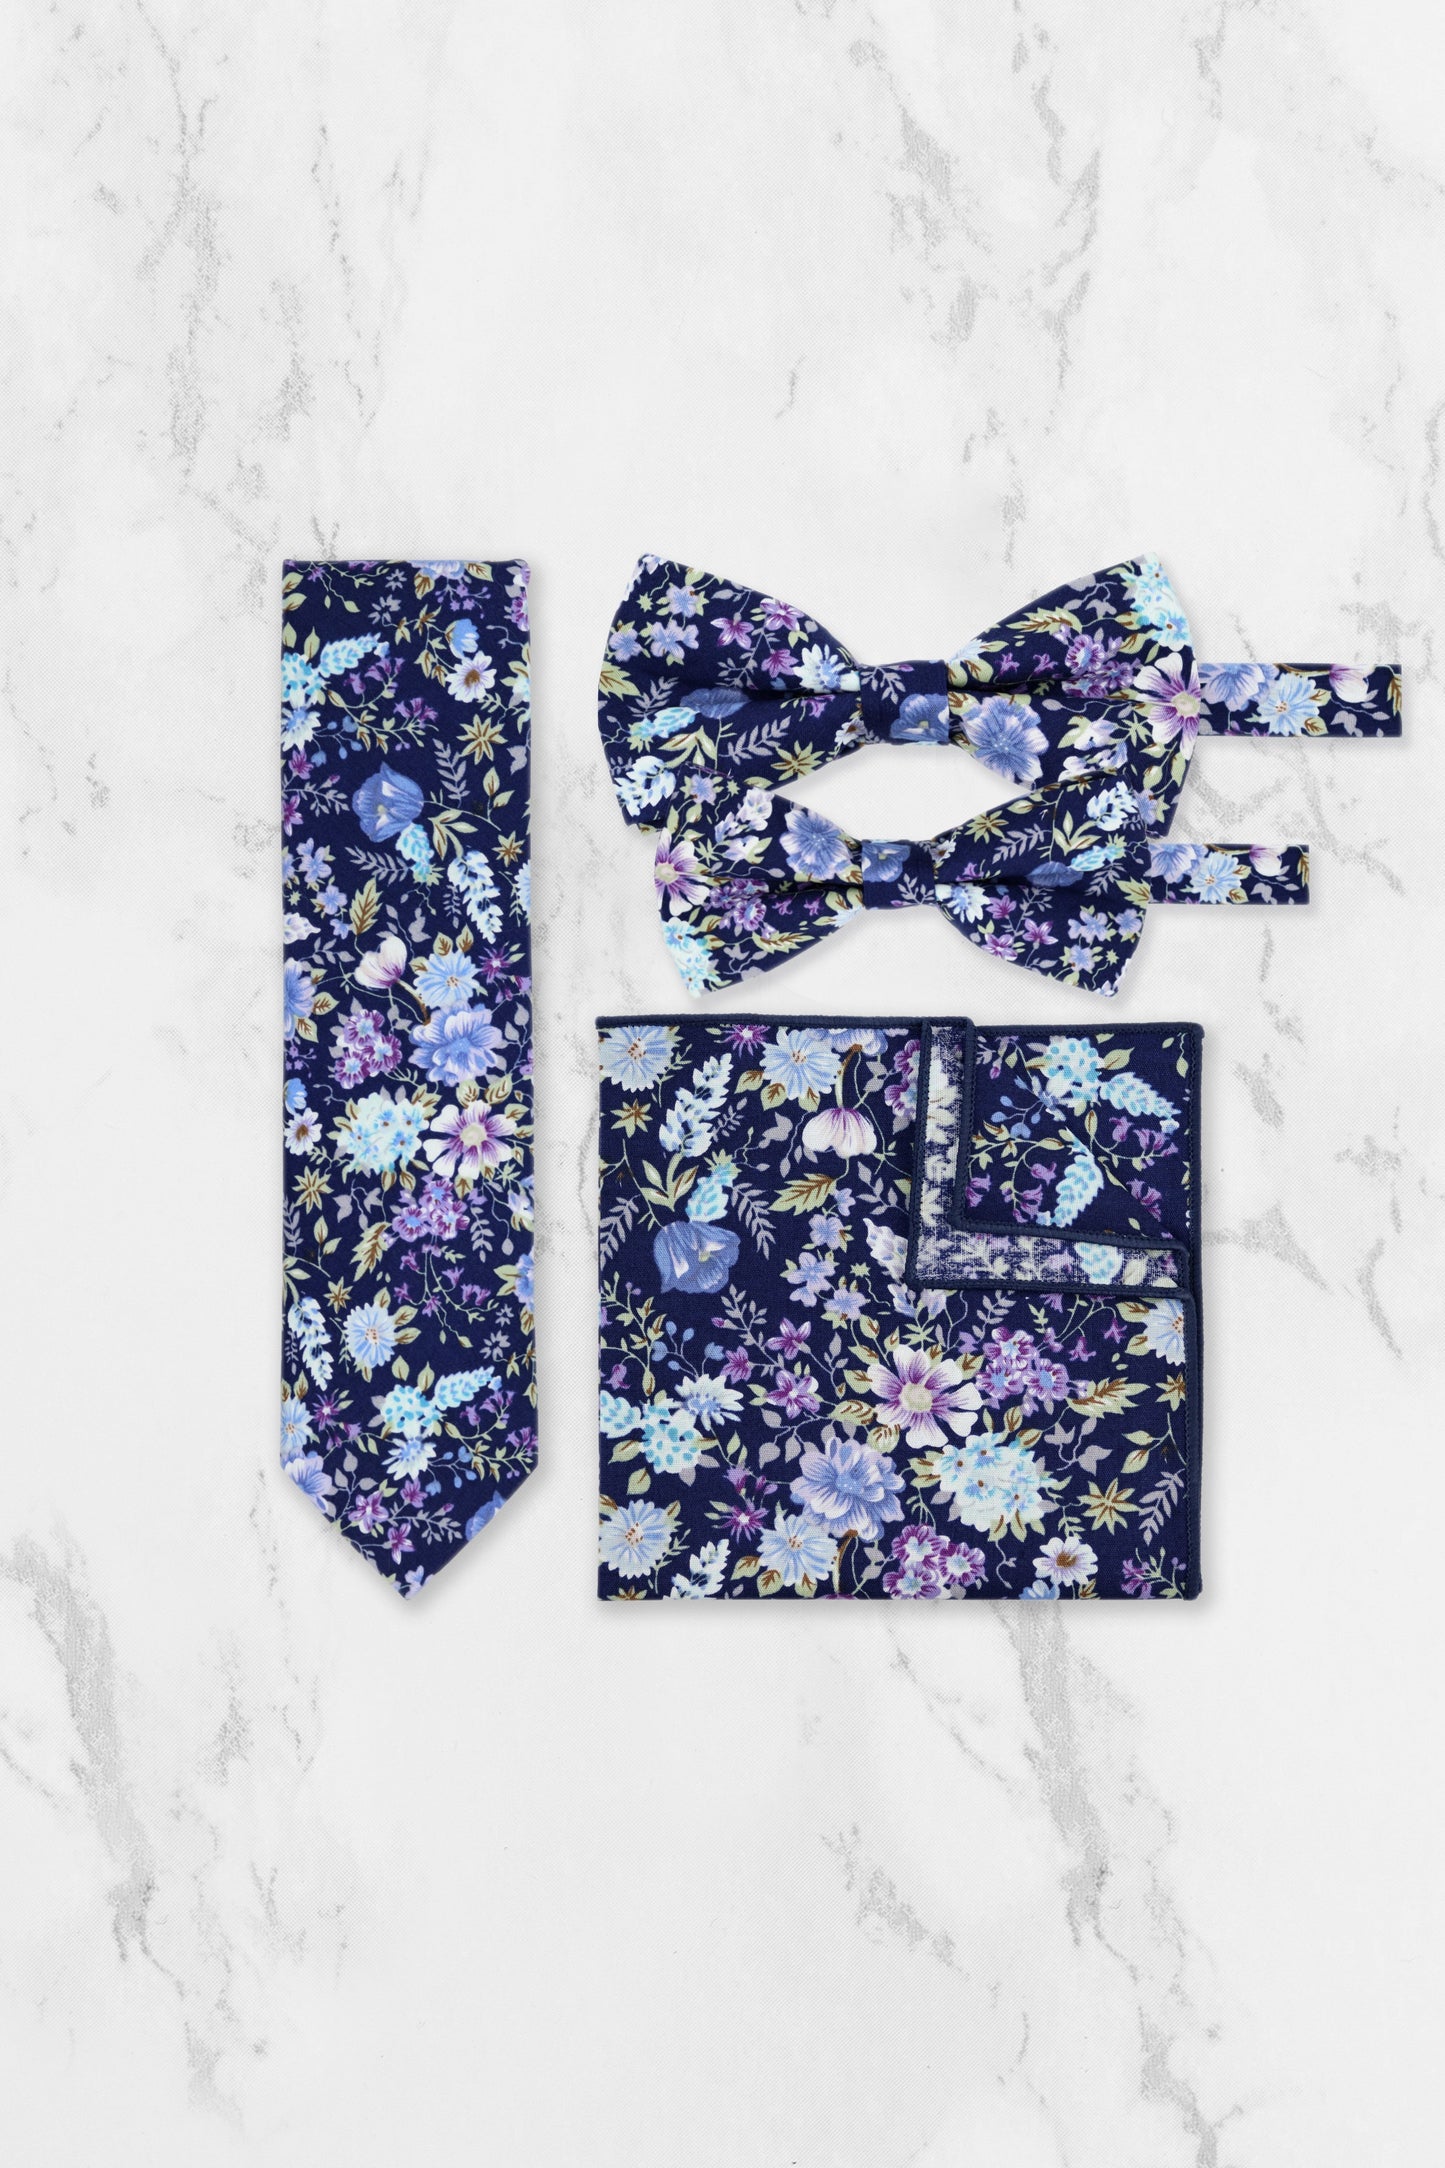 100% Cotton Floral Print Child Bow Tie - Navy Blue & Purple